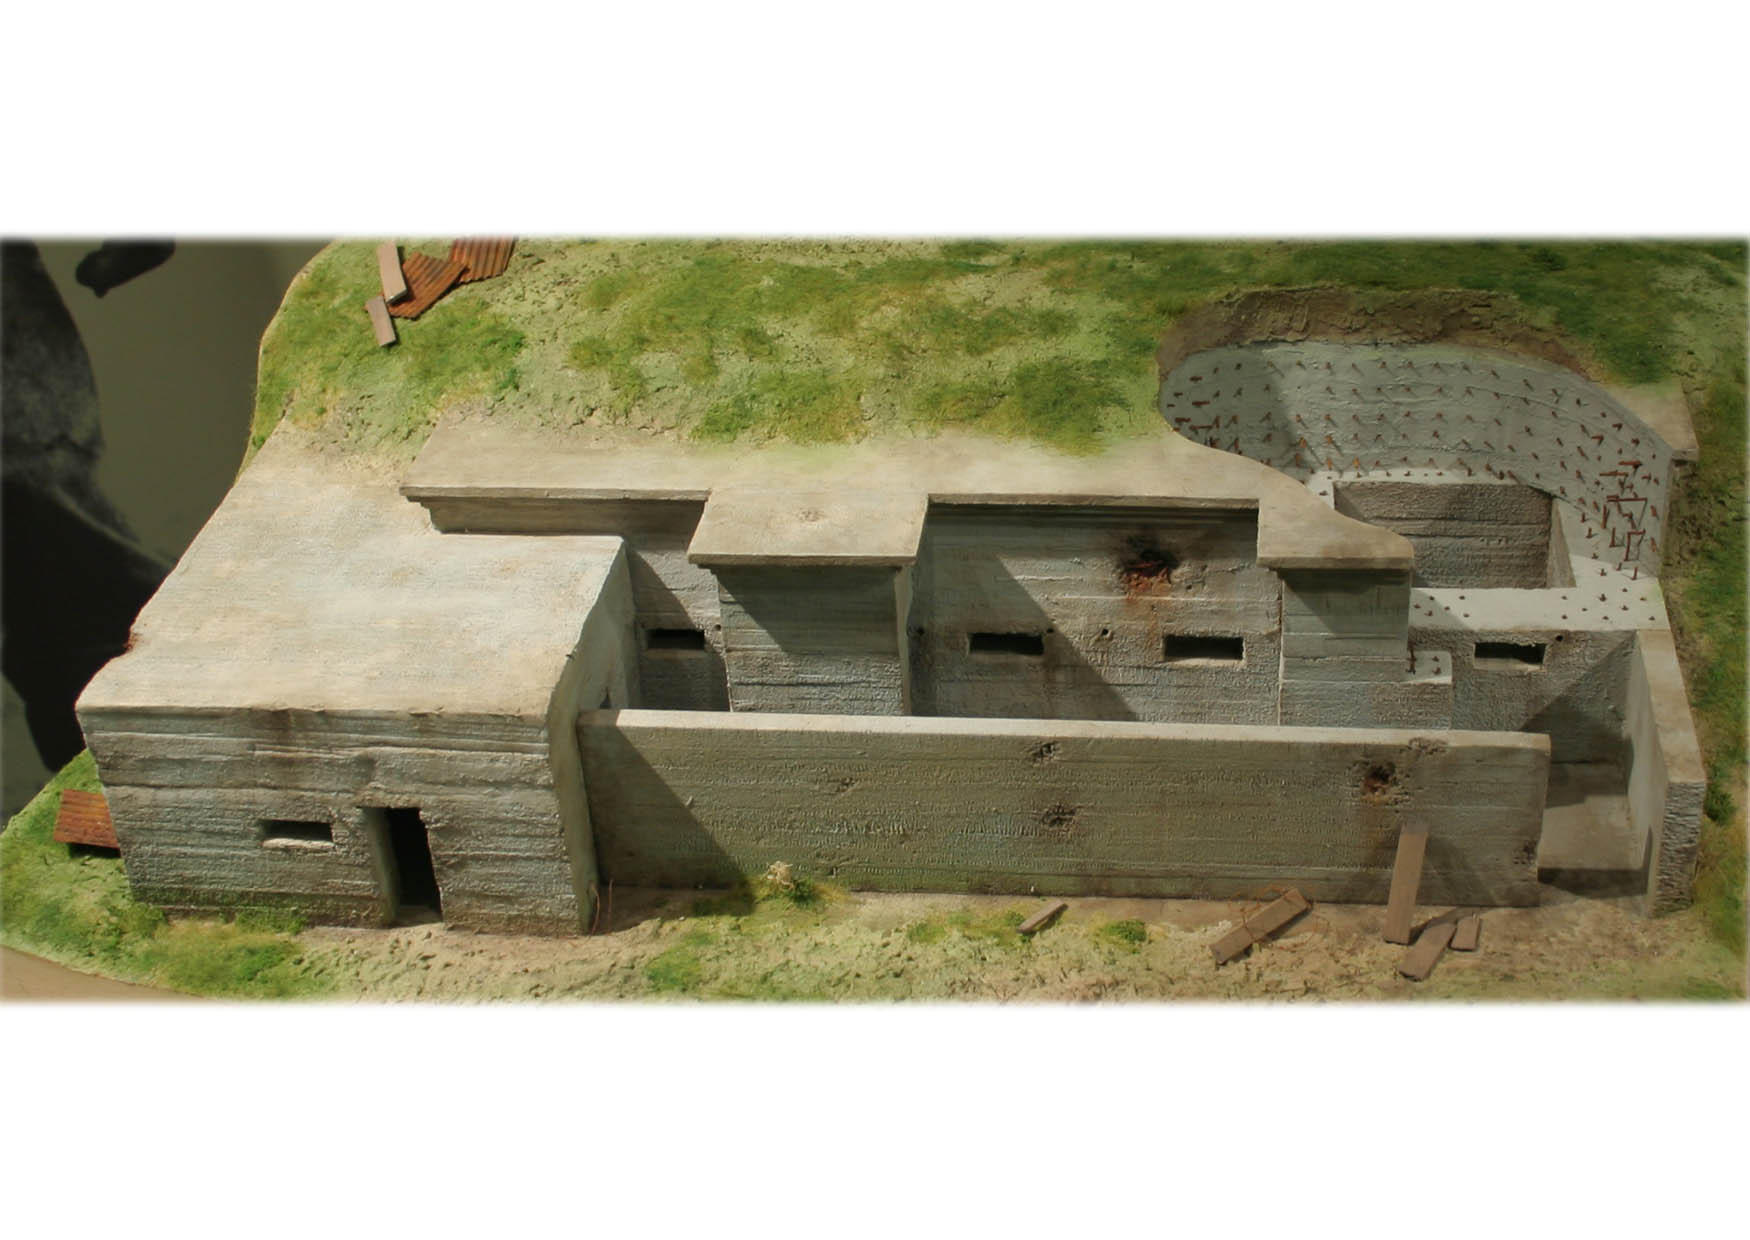 Foto modell av tysk bunker, 1916